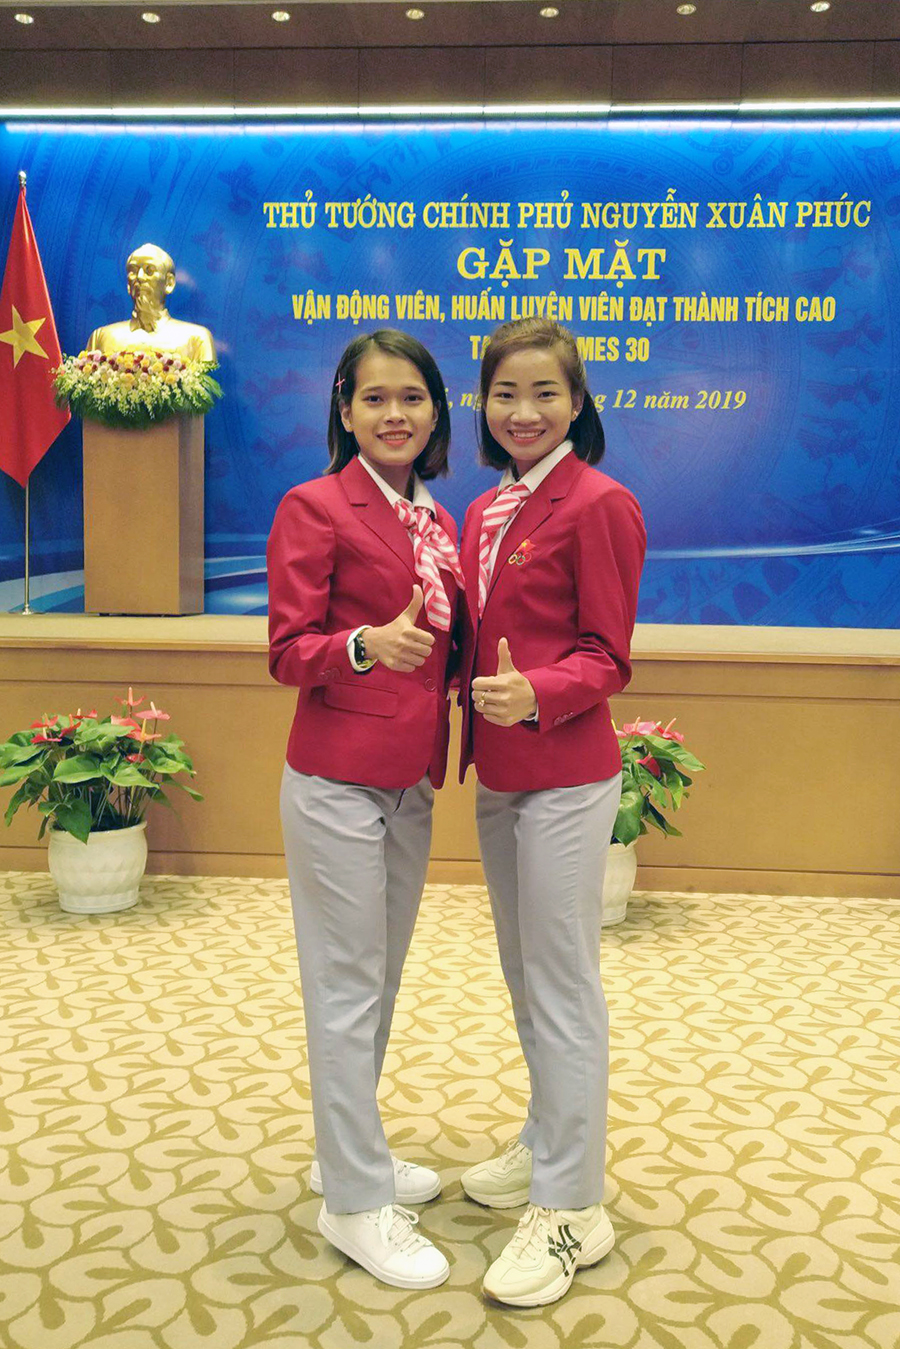 Phạm Thị Hồng Lệ và ước muốn giành Cúp Chiến thắng 2019 sau “HCĐ như vàng” SEA Games 30